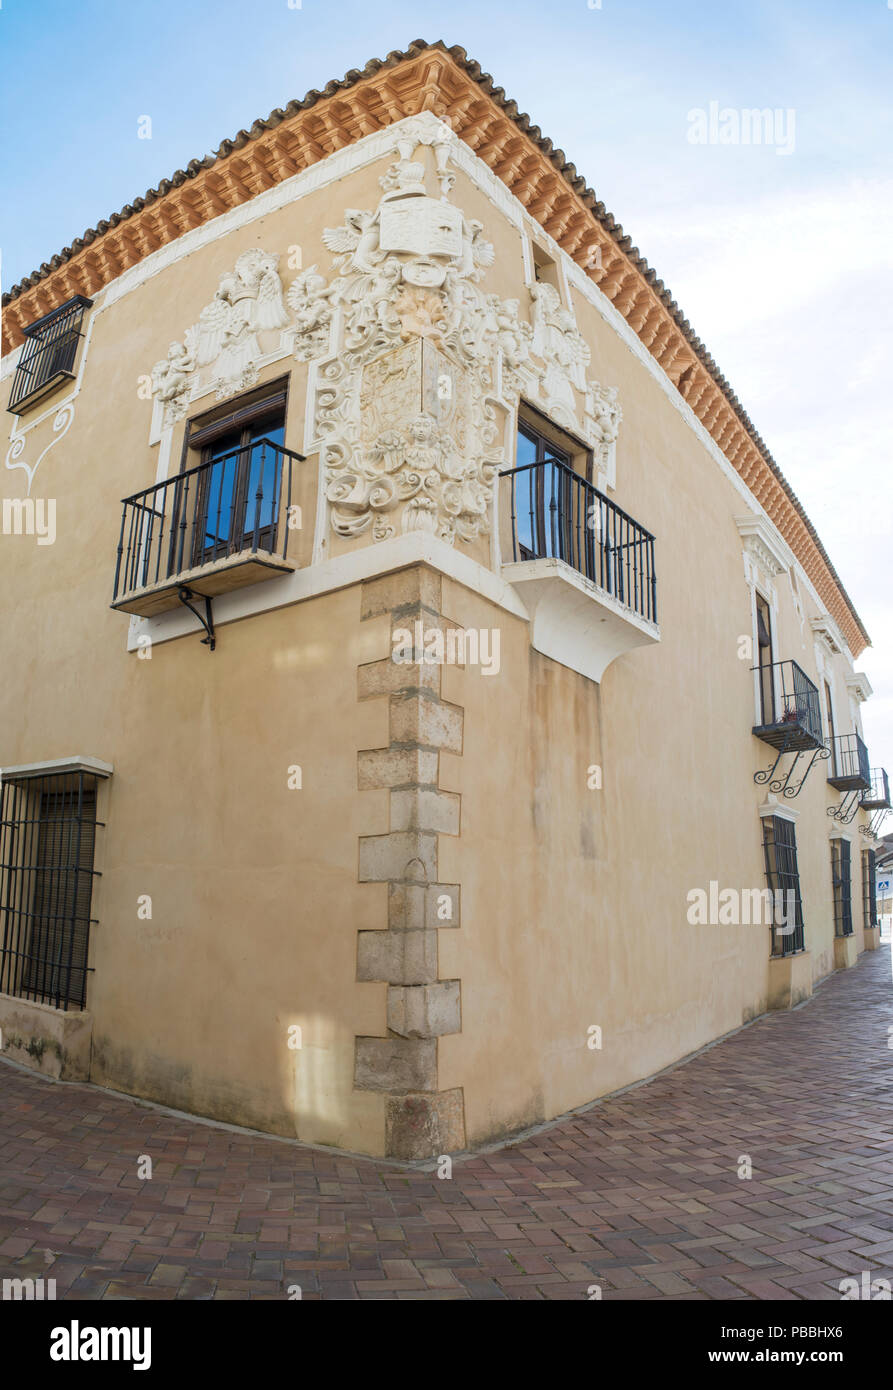 Almendralejo, Spain. January 26th, 2018: Town Hall Building former Palace of Monsalud, Almendralejo, Badajoz, Spain. Corner Balcony Stock Photo